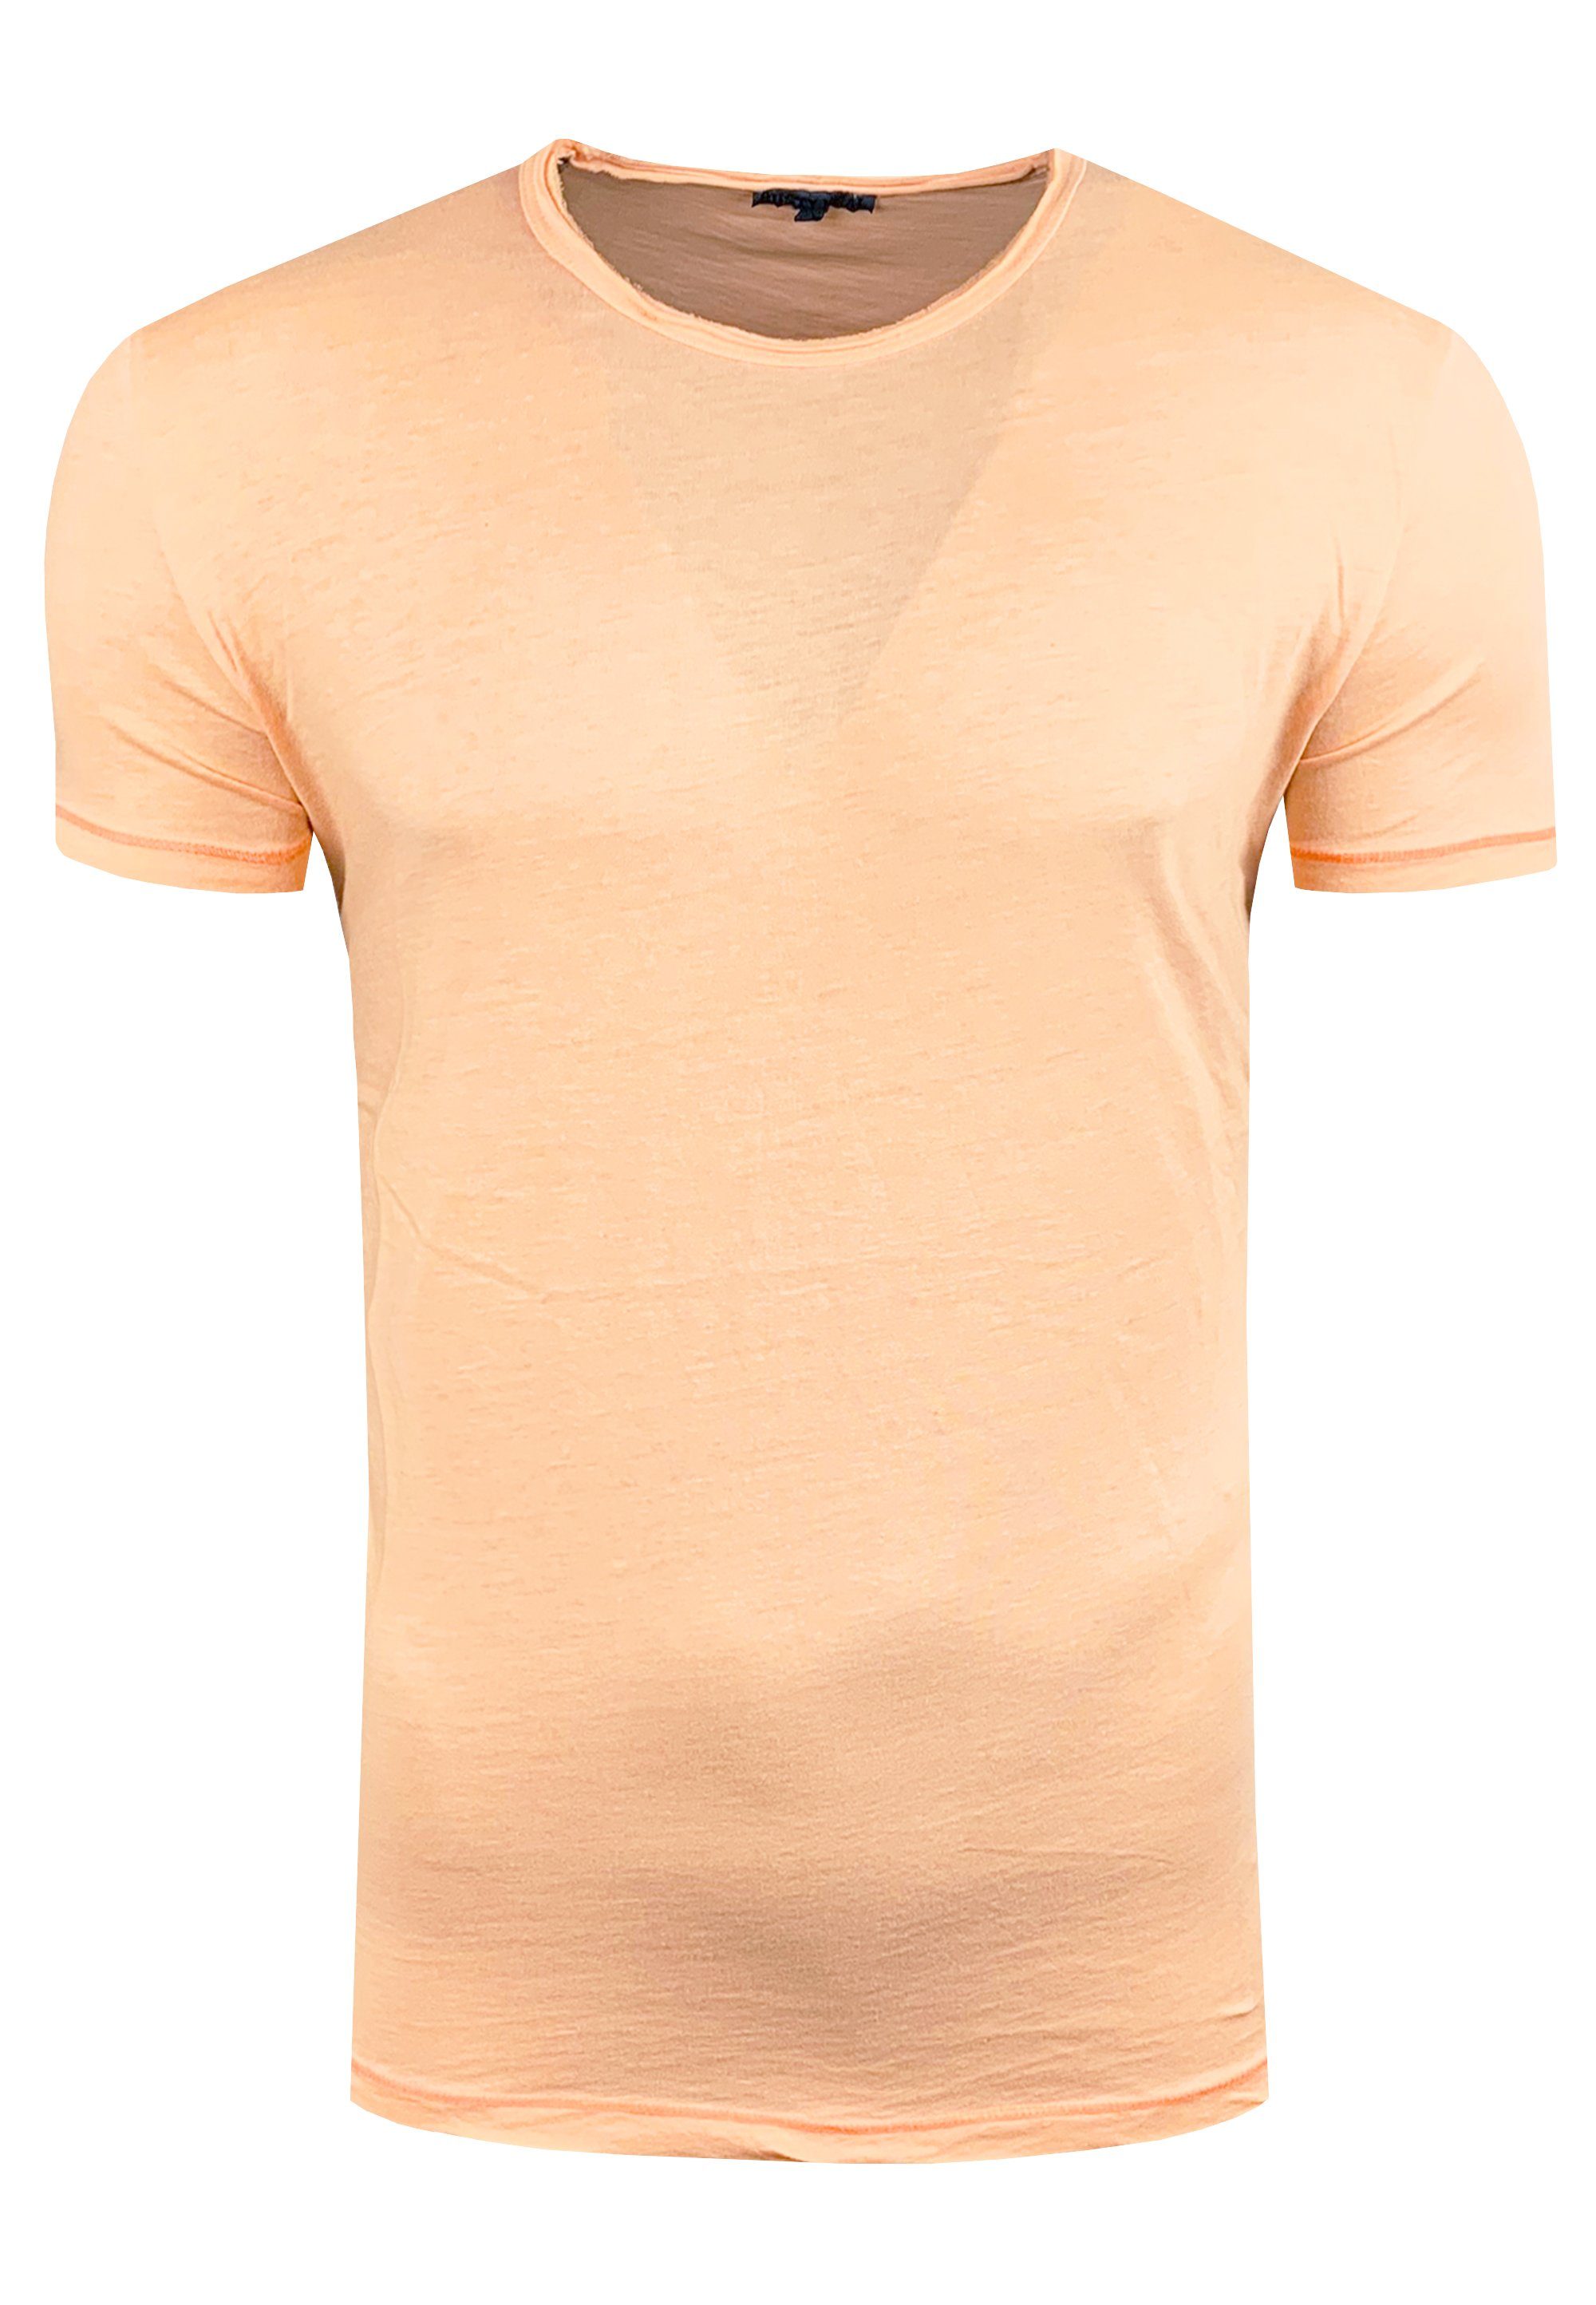 Vintage-Optik orange angesagter Rusty in T-Shirt Neal